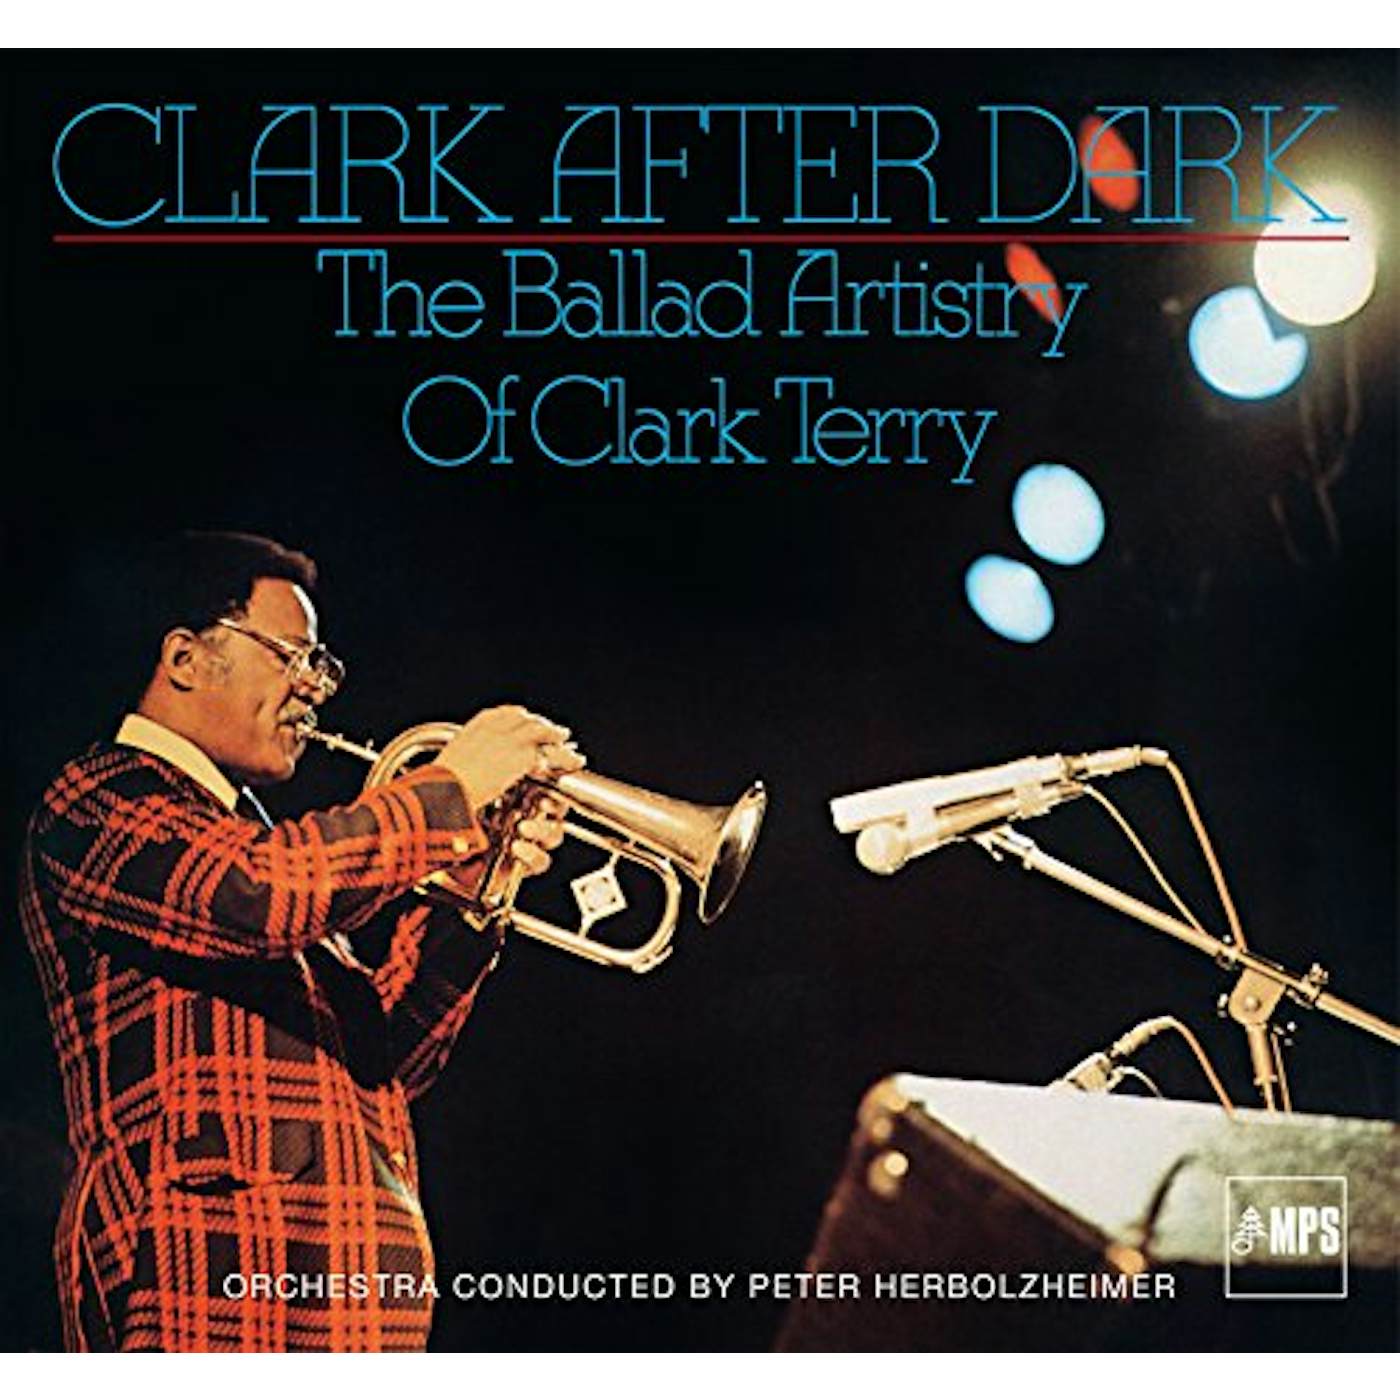 Clark Terry CLARK AFTER DARK Vinyl Record - UK Release